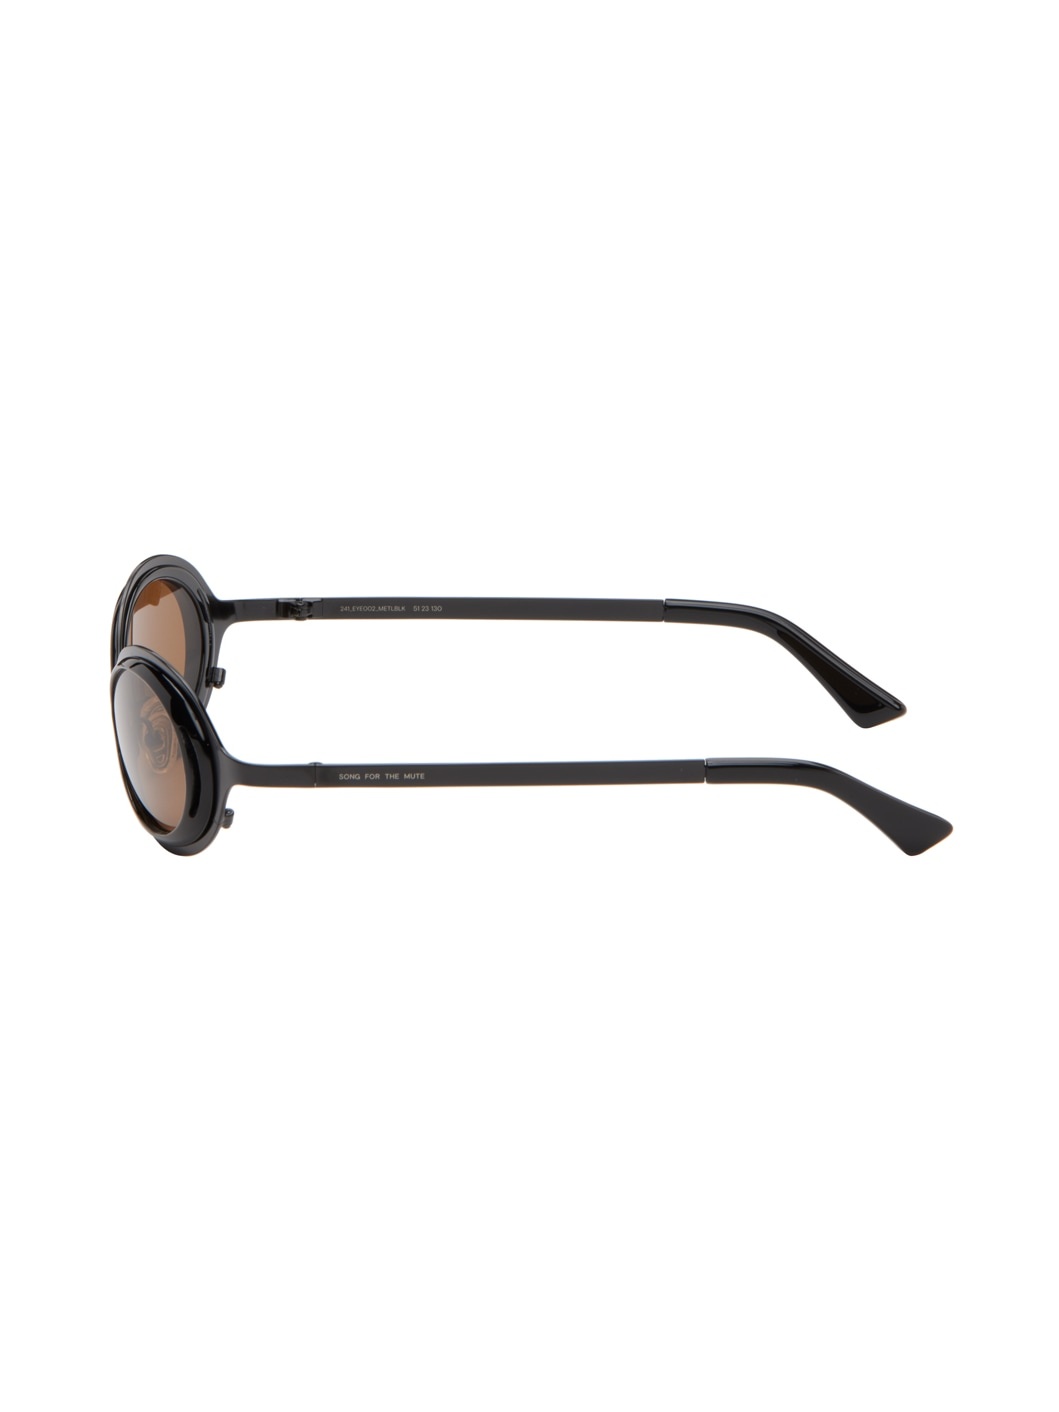 SSENSE Exclusive Black 'The Goggle' Sunglasses - 3